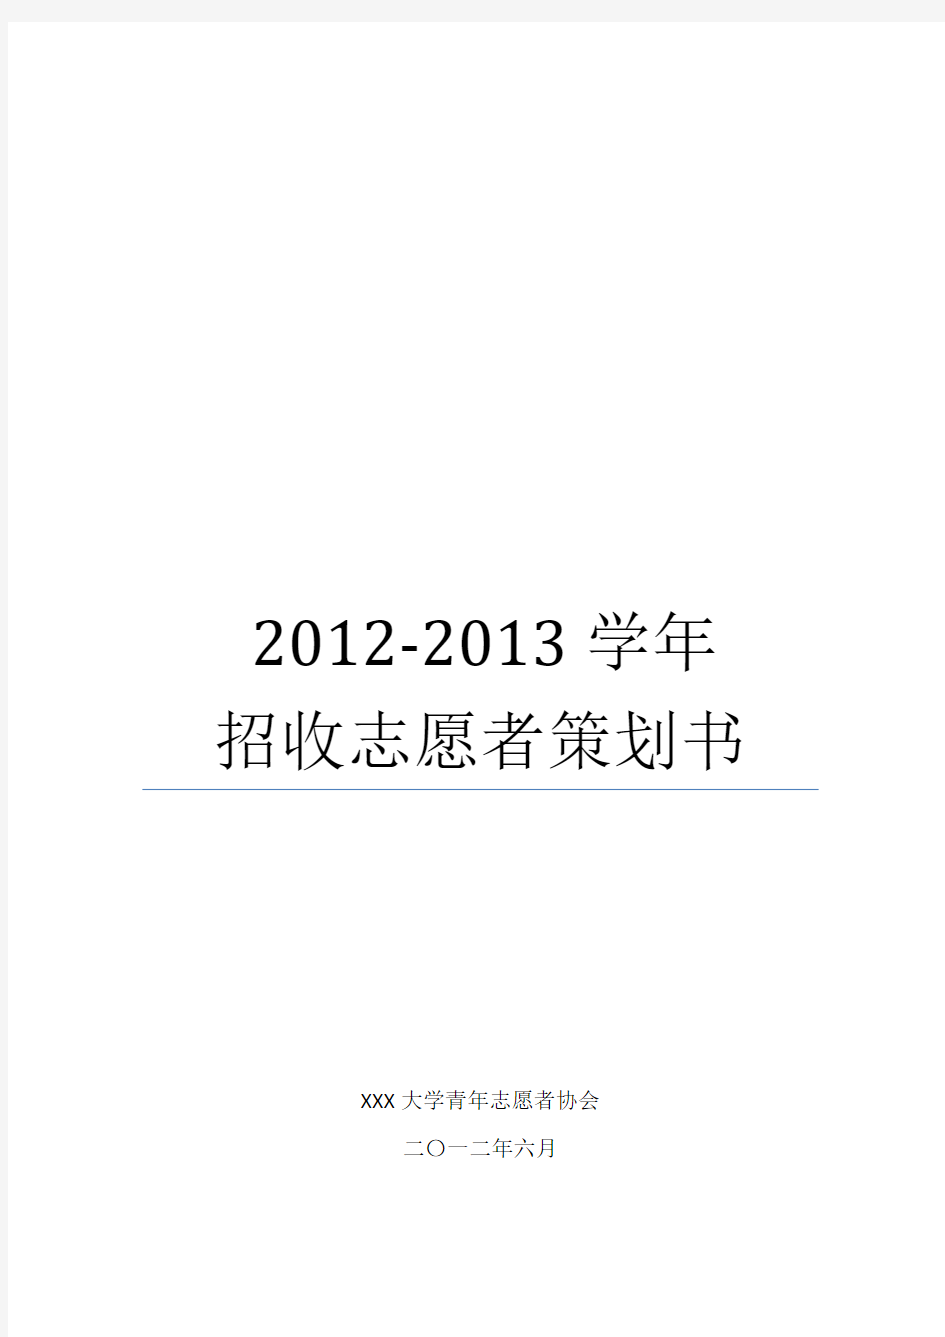 校青协2012-2013学年招收志愿者策划(改)